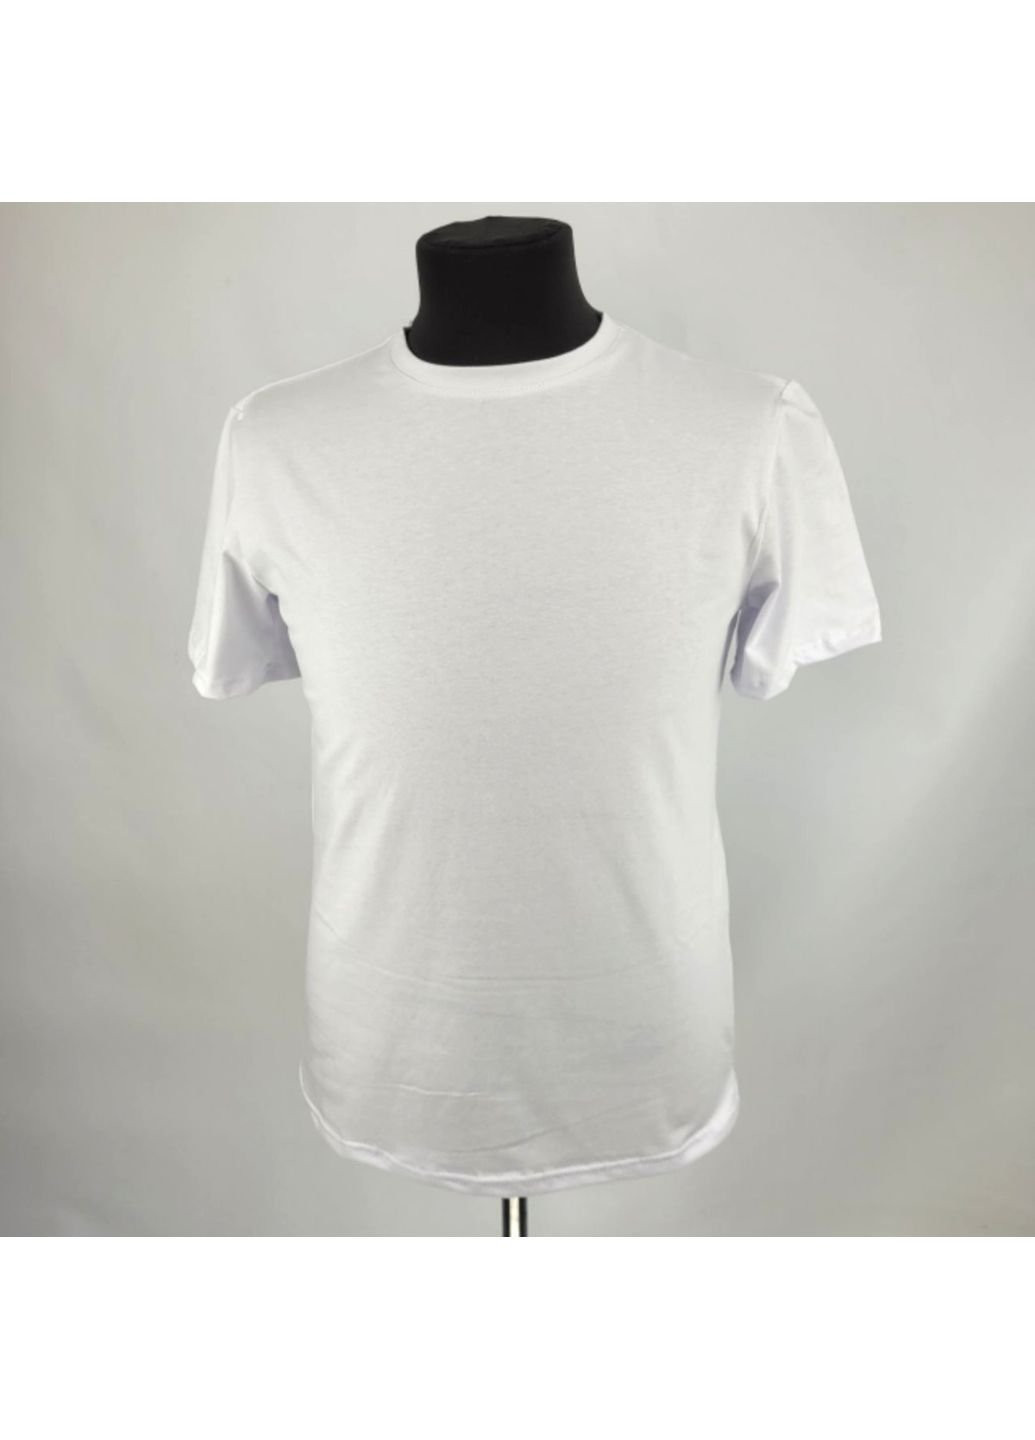 Біла футболка чоловіча тактична зсу 1063 7259 xl біла No Brand